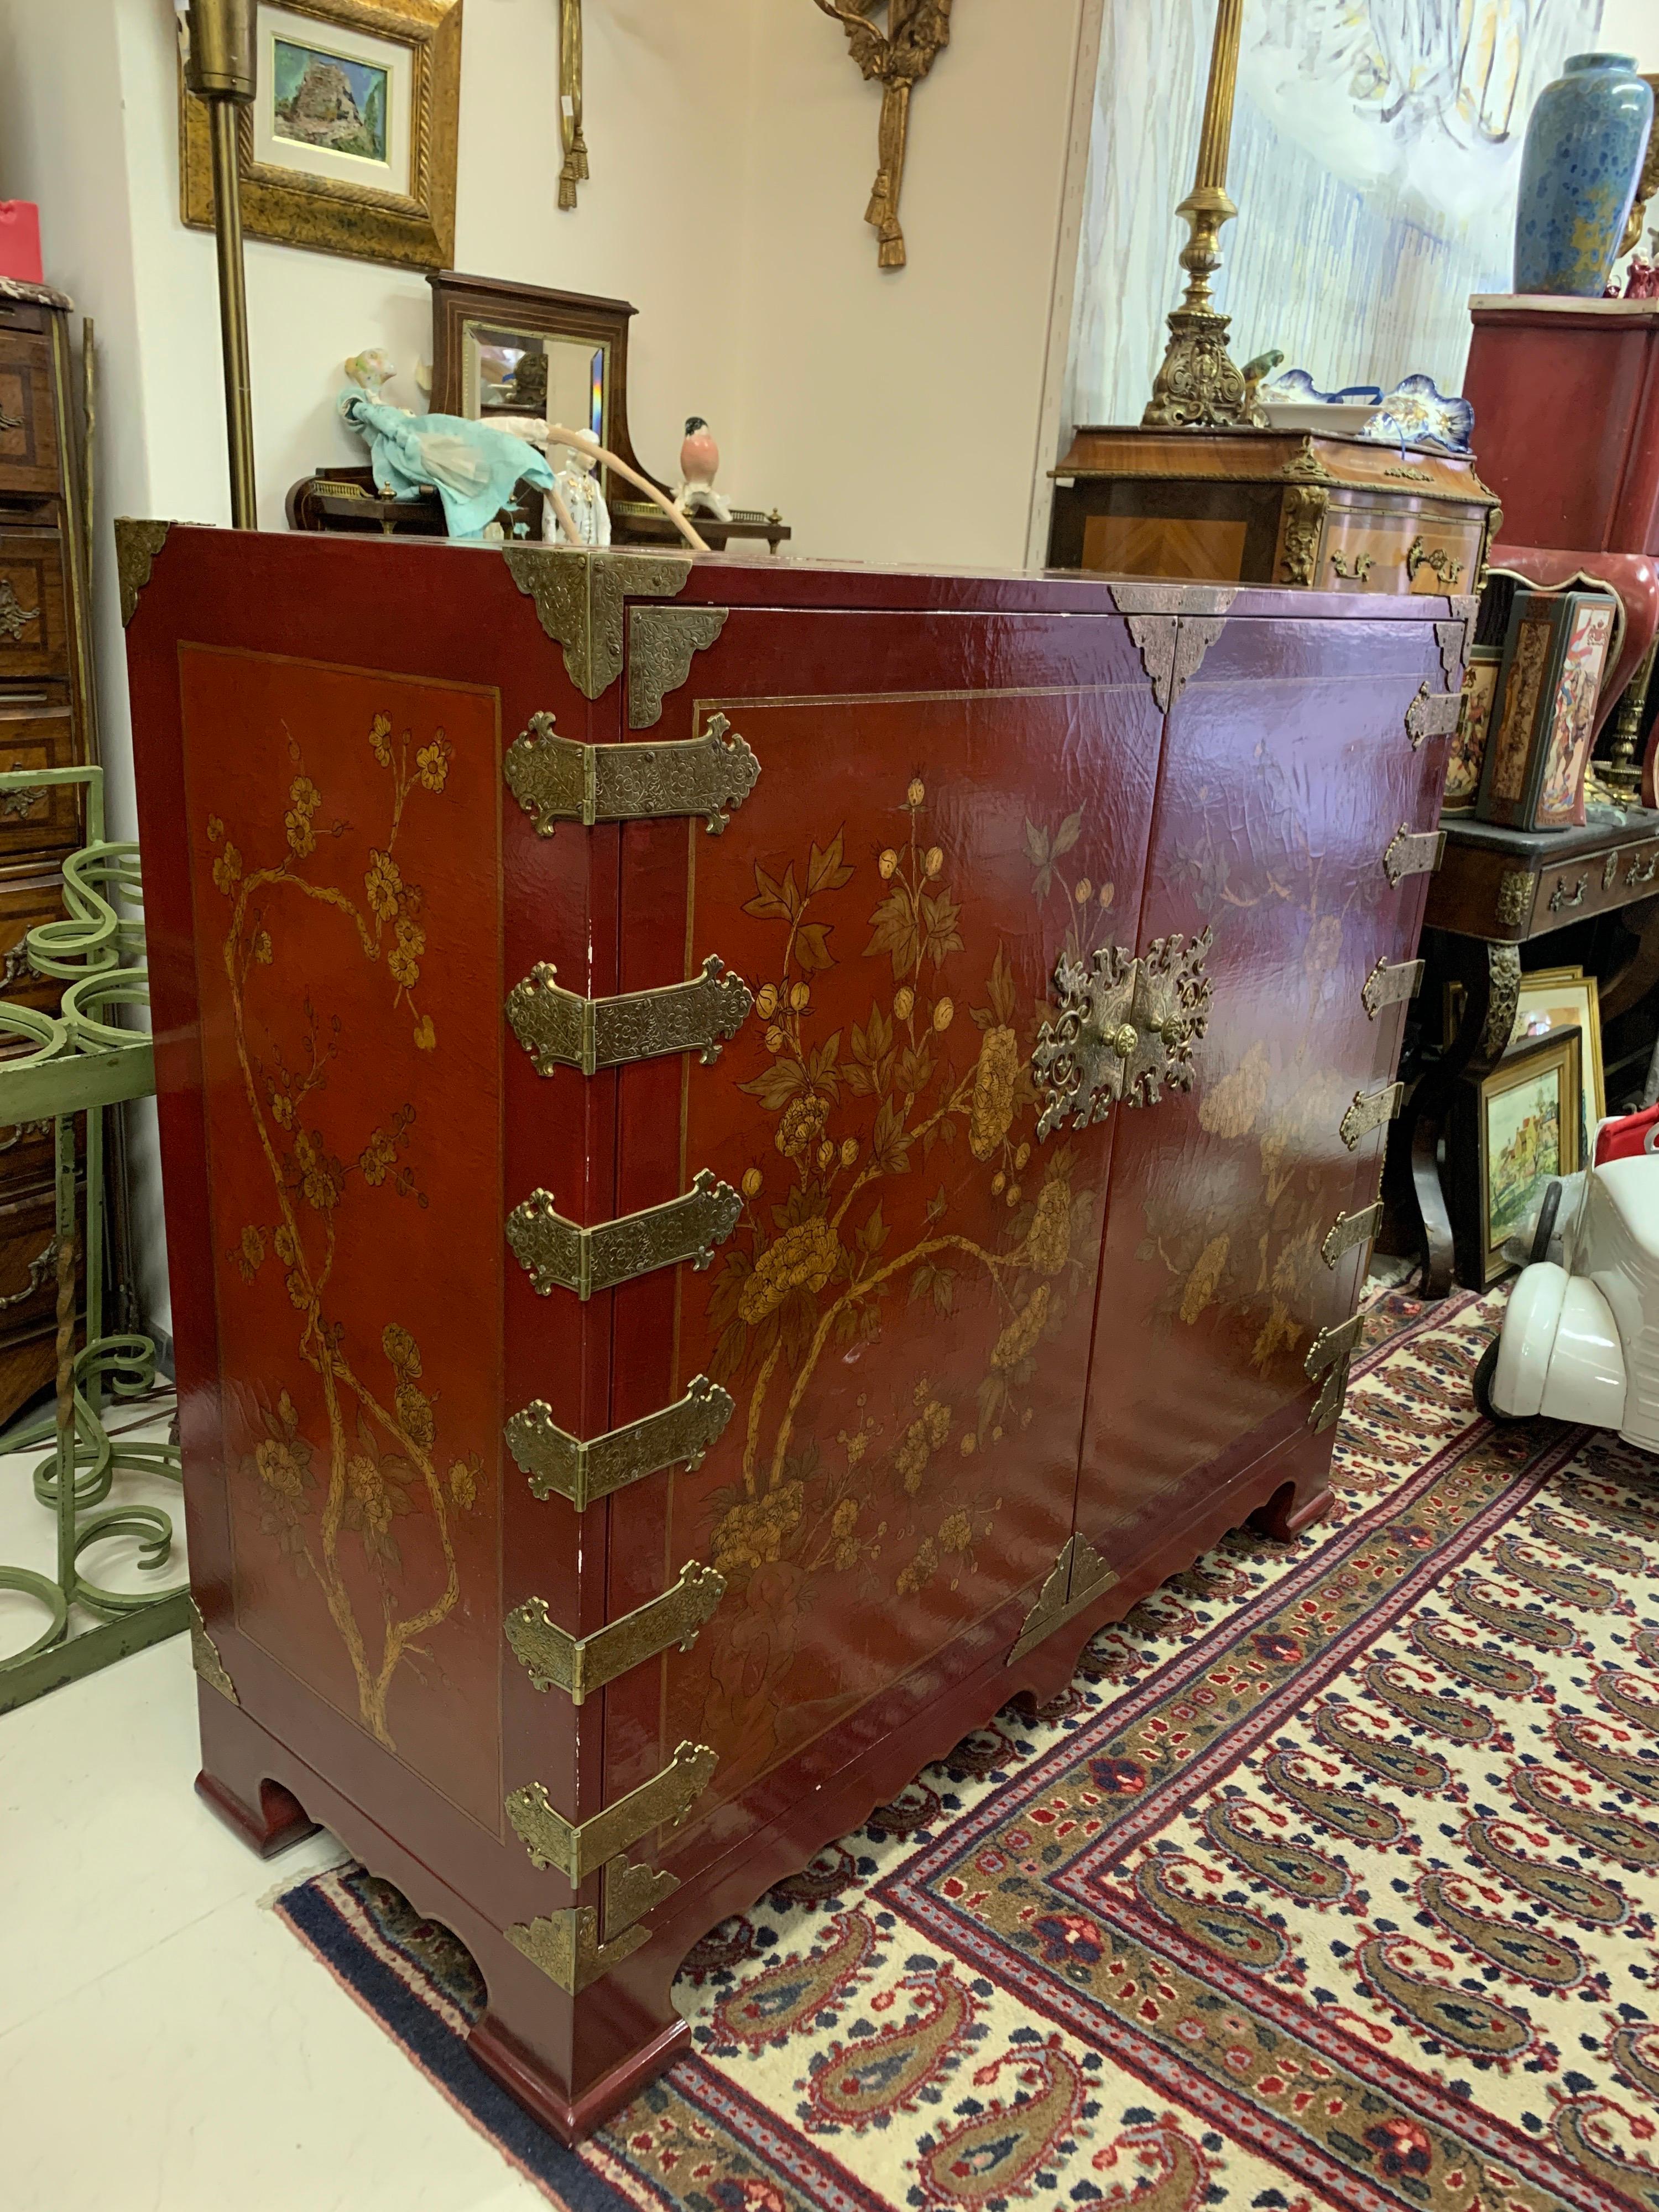 Handbemalter Schrank aus rot lackiertem Holz, verziert mit Blumen und Metallbeschlägen. Im Inneren ist ein Fernsehgerät installiert. 
China
20. Jahrhundert.